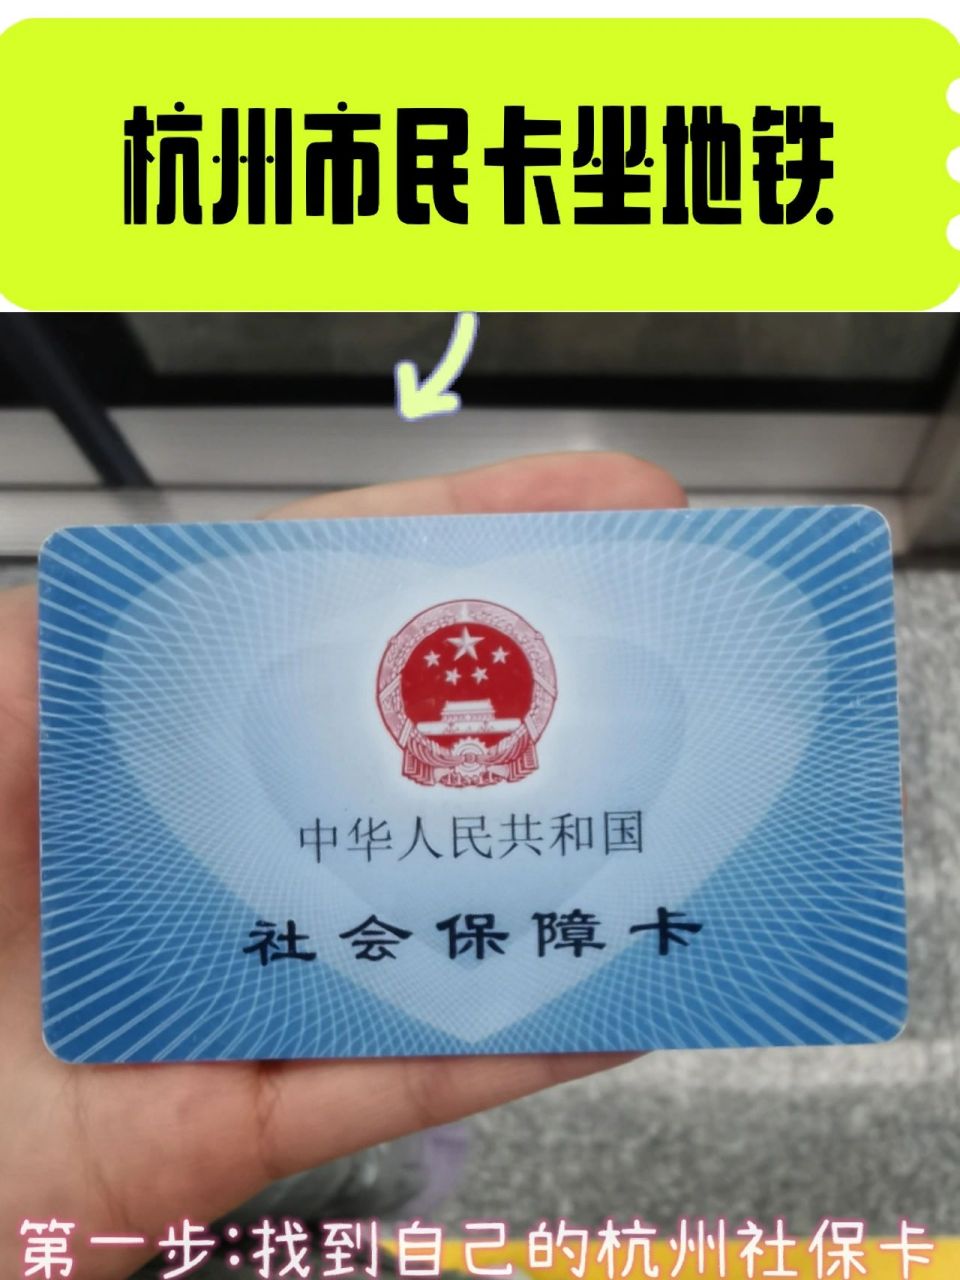 杭州社保卡/市民卡/一卡通坐公交地铁攻略 2019年来杭州我就拥有了